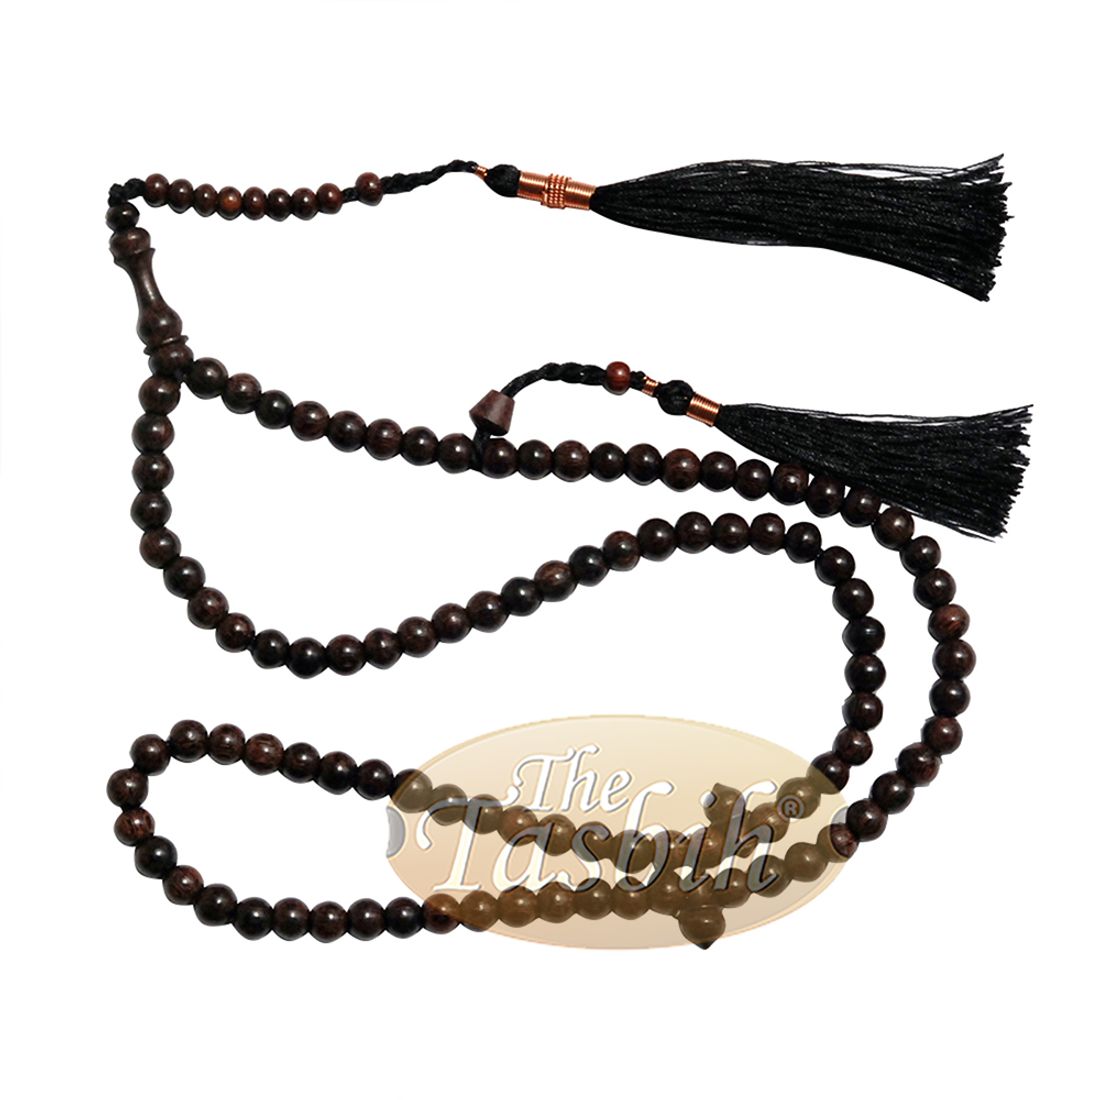 6mm Dark Brown Tamarind Wood Necklace Prayer Beads Copper on Tassels